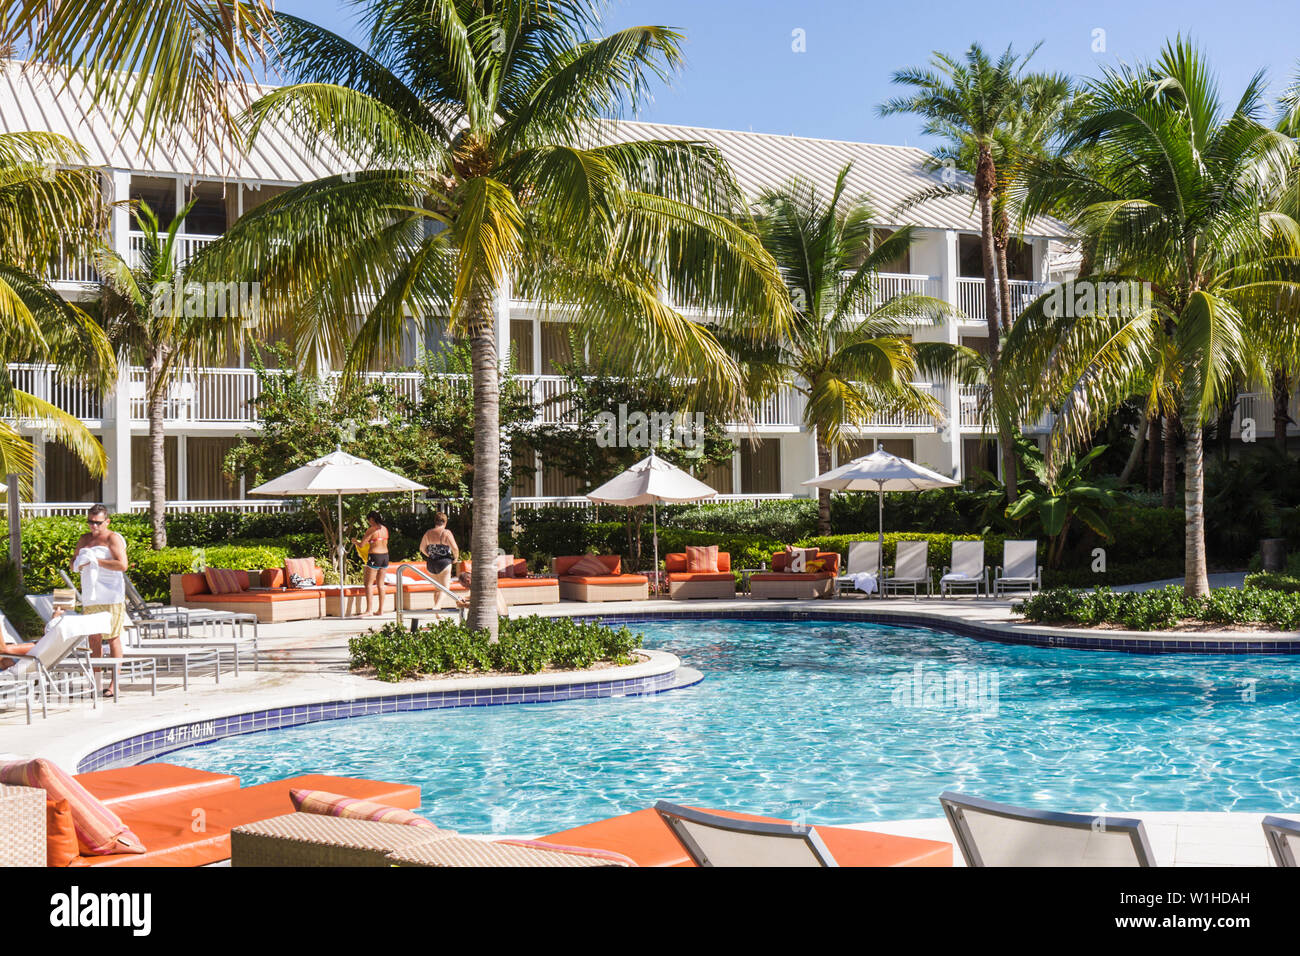 Fort ft. Lauderdale Florida,Hilton fort Lauderdale Marina,hôtel hôtels motels Inn motel,hôtels,chaîne,hospitalité,hébergement,piscine,tropical,salon Banque D'Images